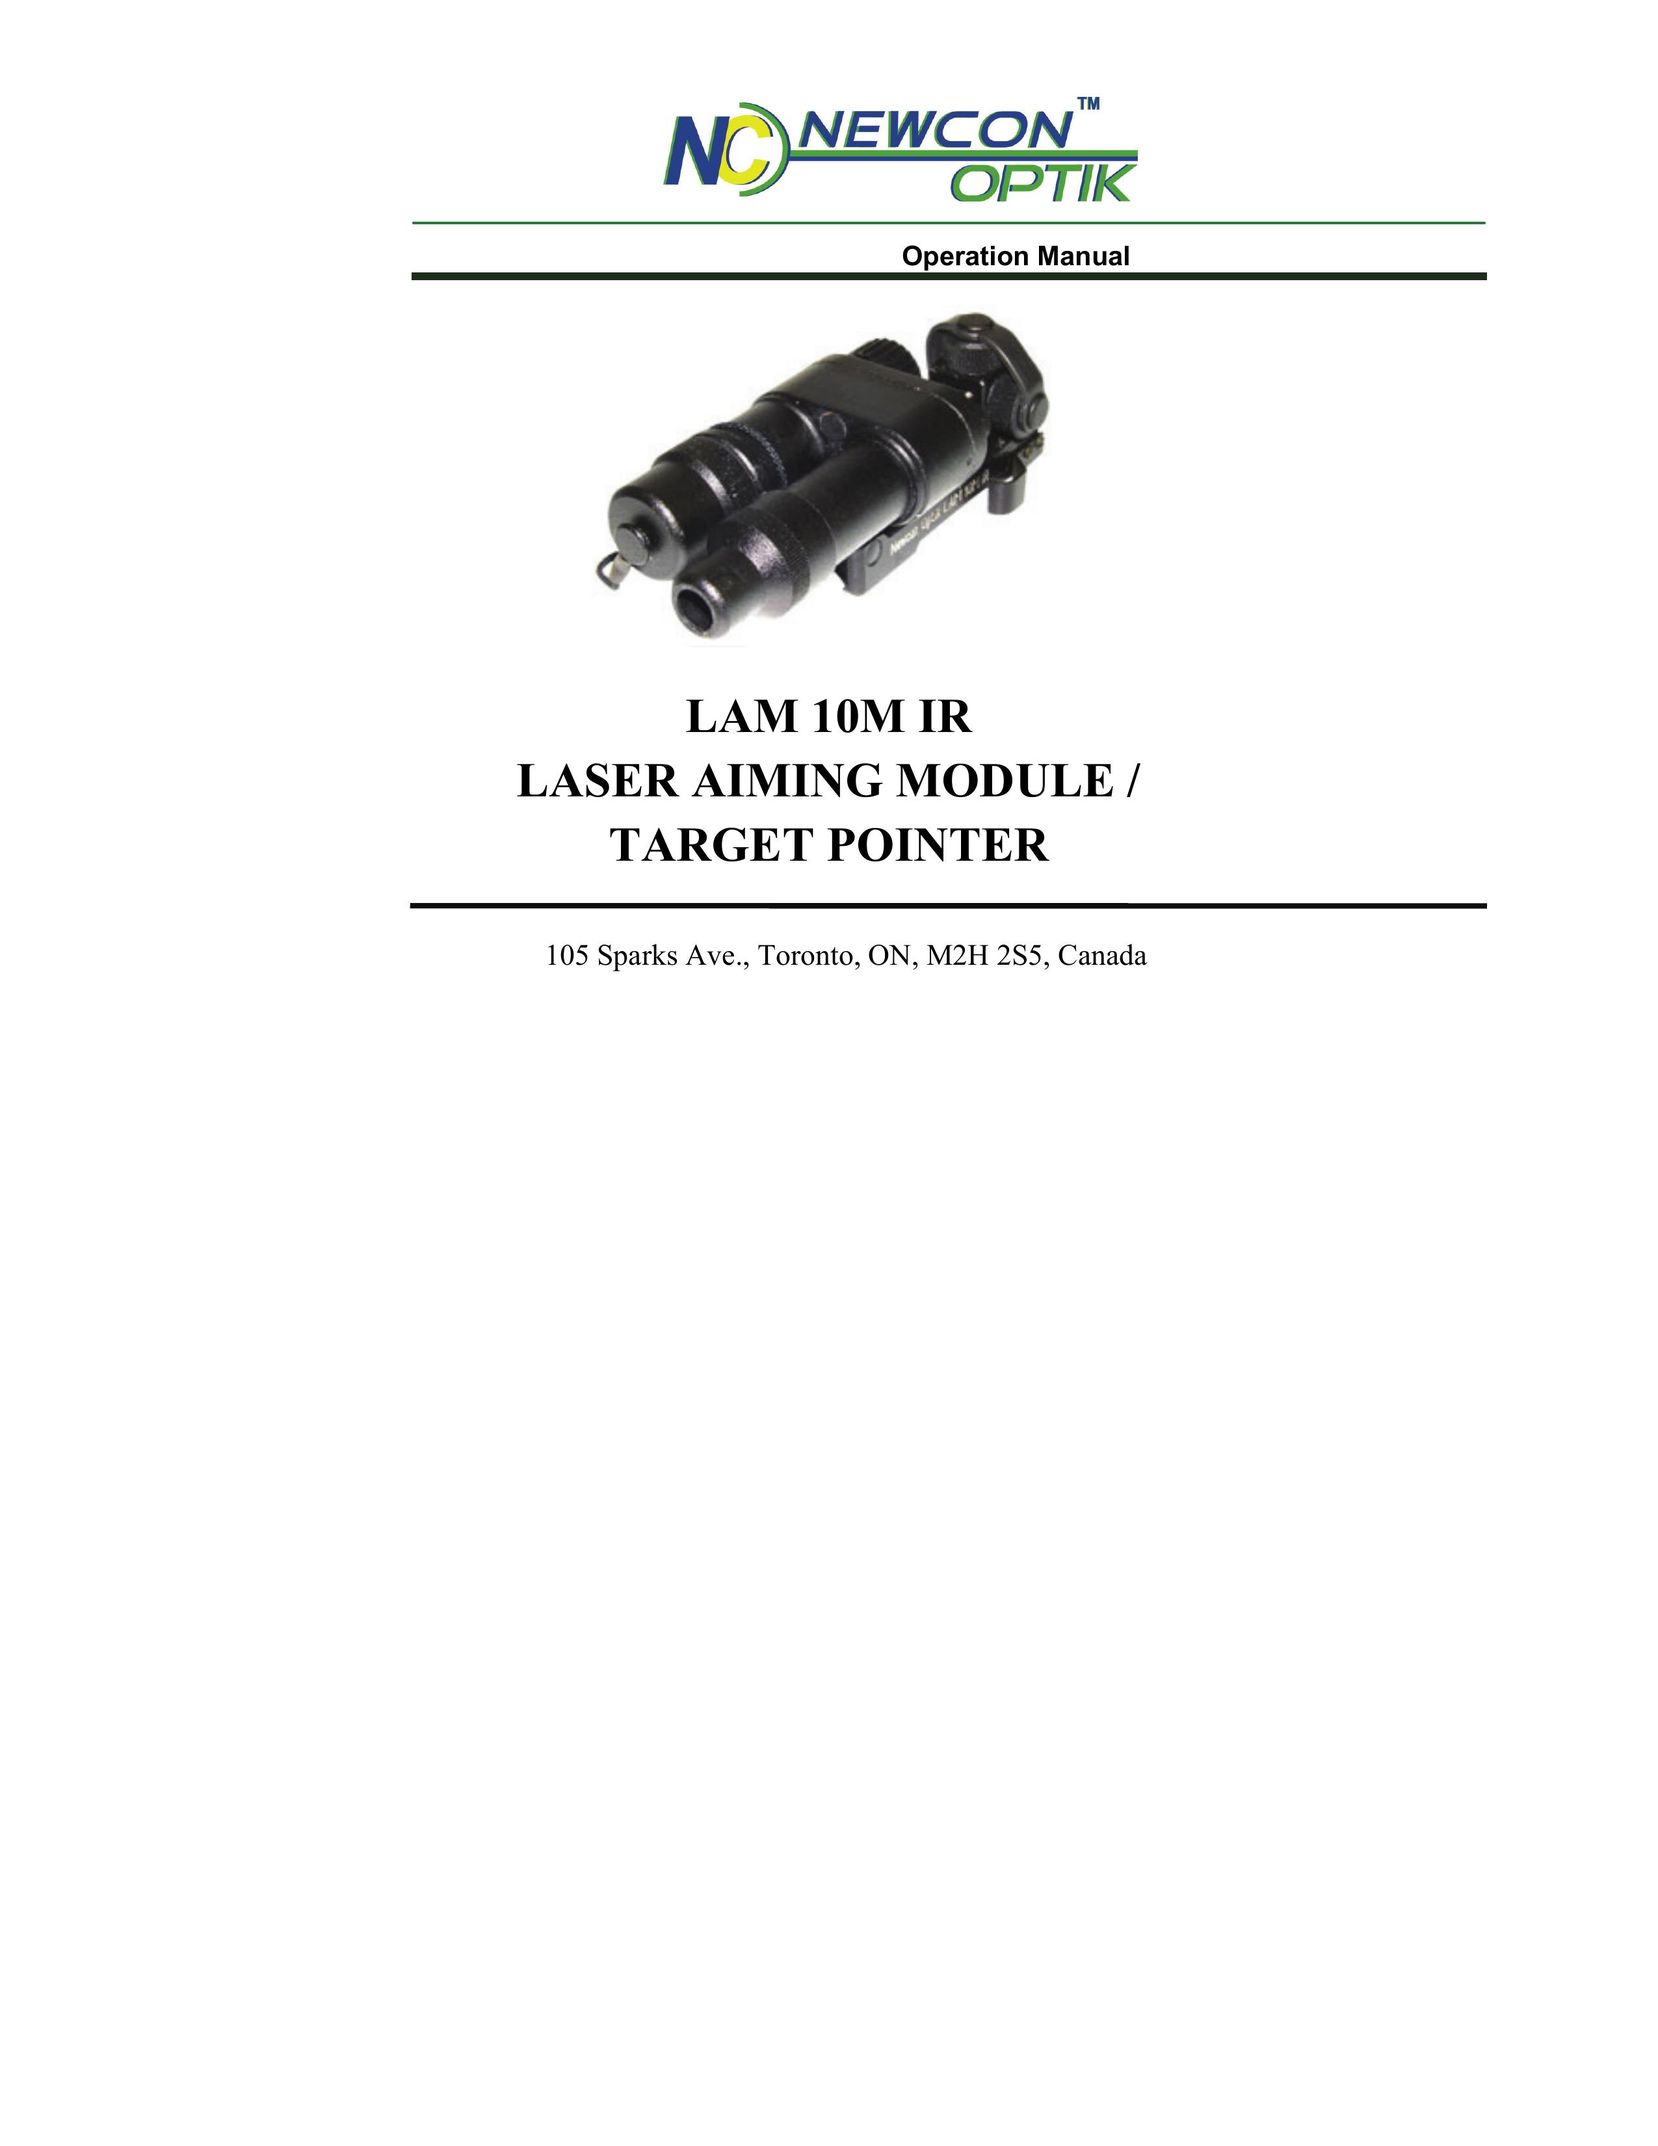 Newcon Optik LAM 10M IR Laser Pointer User Manual